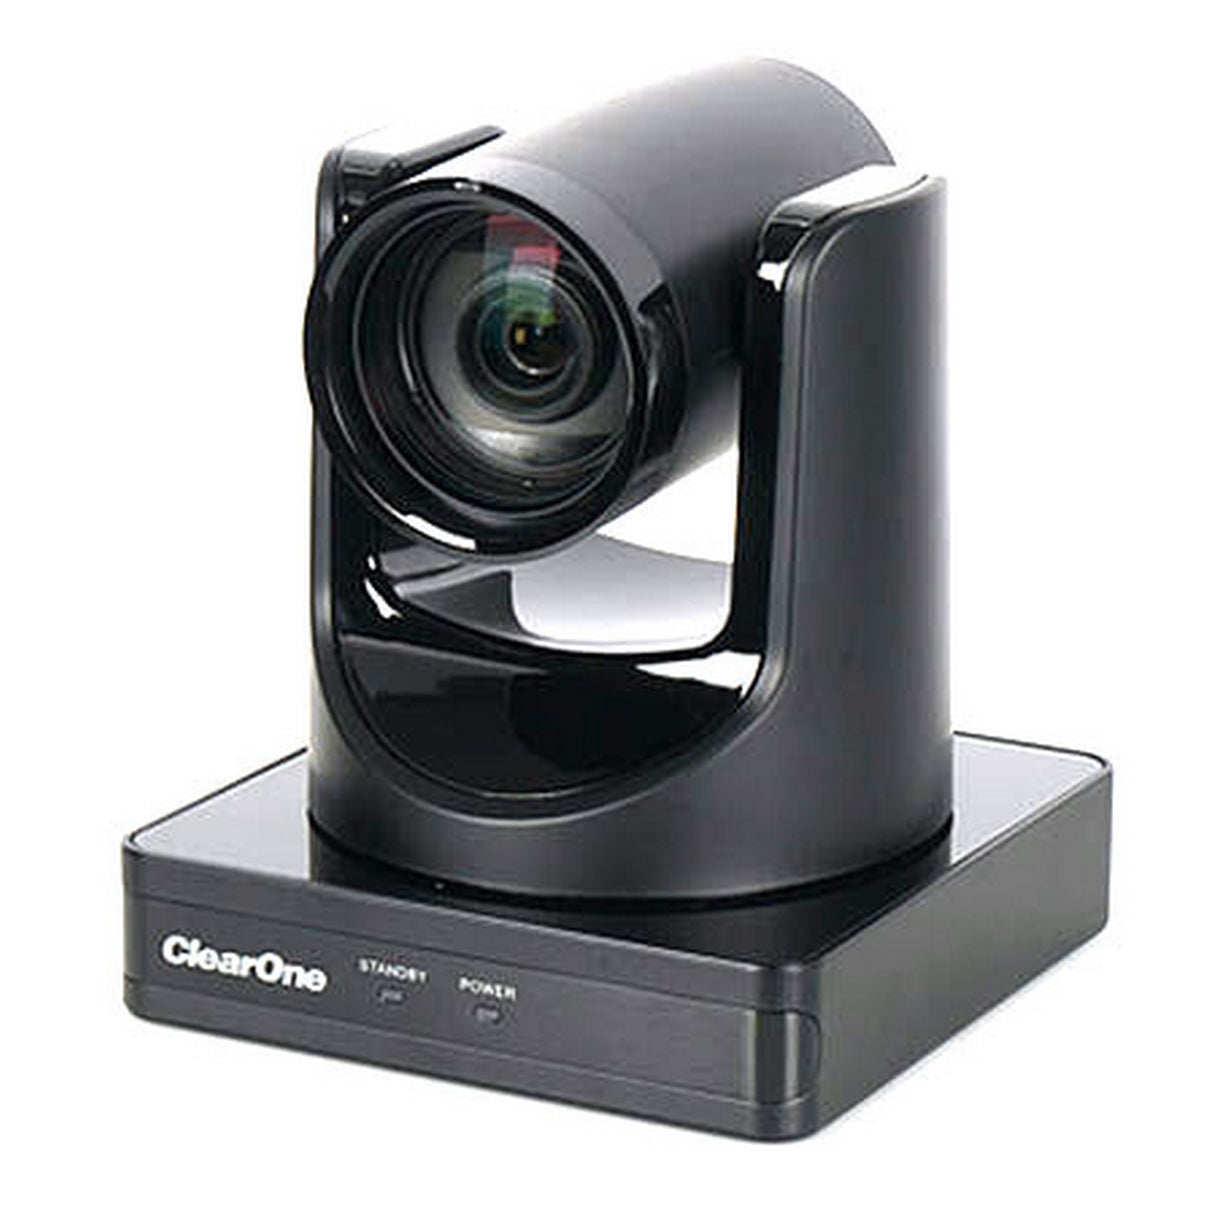 ClearOne UNITE 160 4K USB PTZ Camera